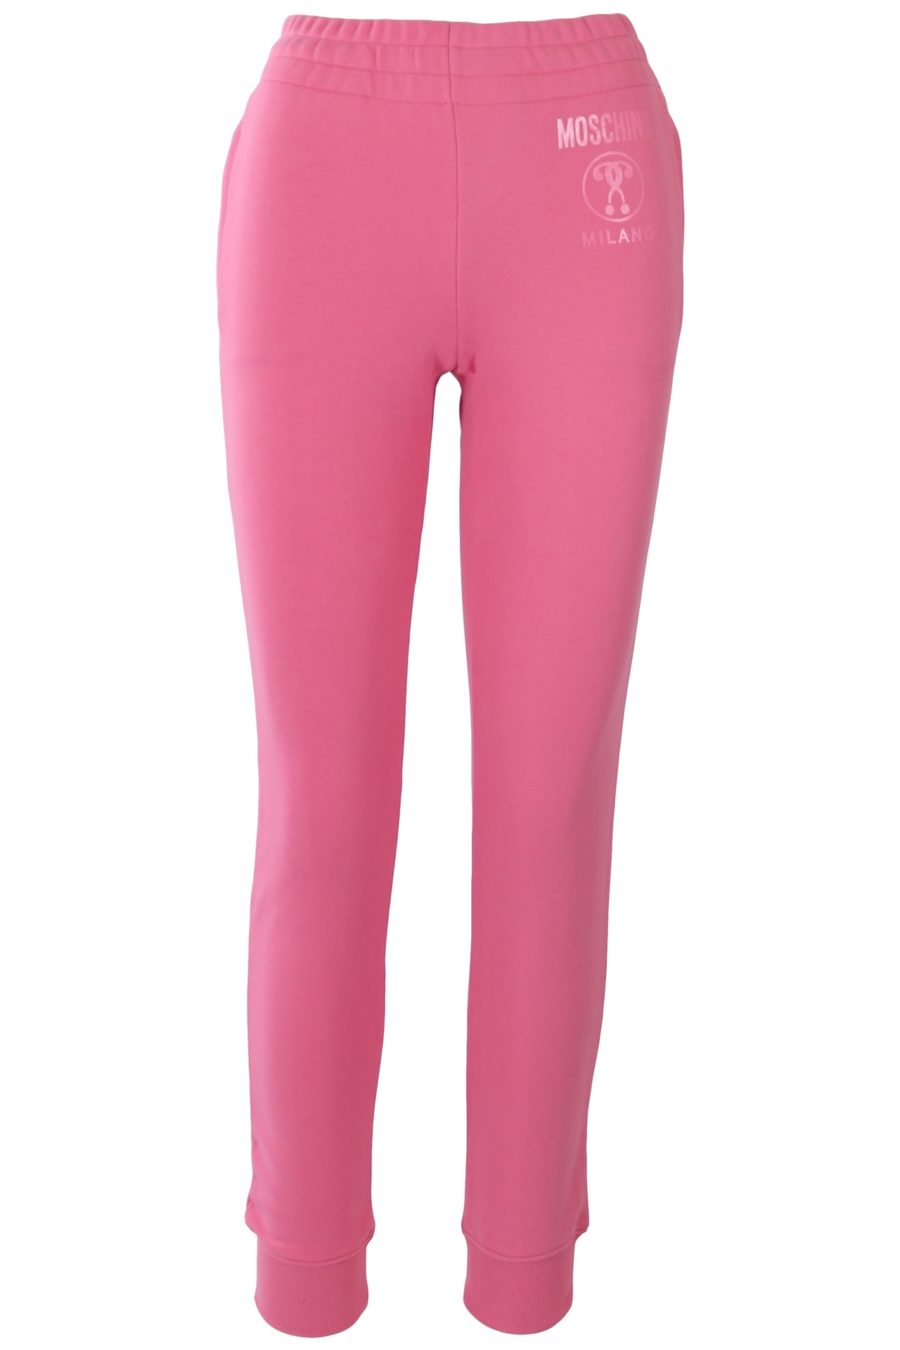 Pantalón Moschino Couture rosa con logo - 047079692b68e01e8e043fa562c3832c497a8ca1